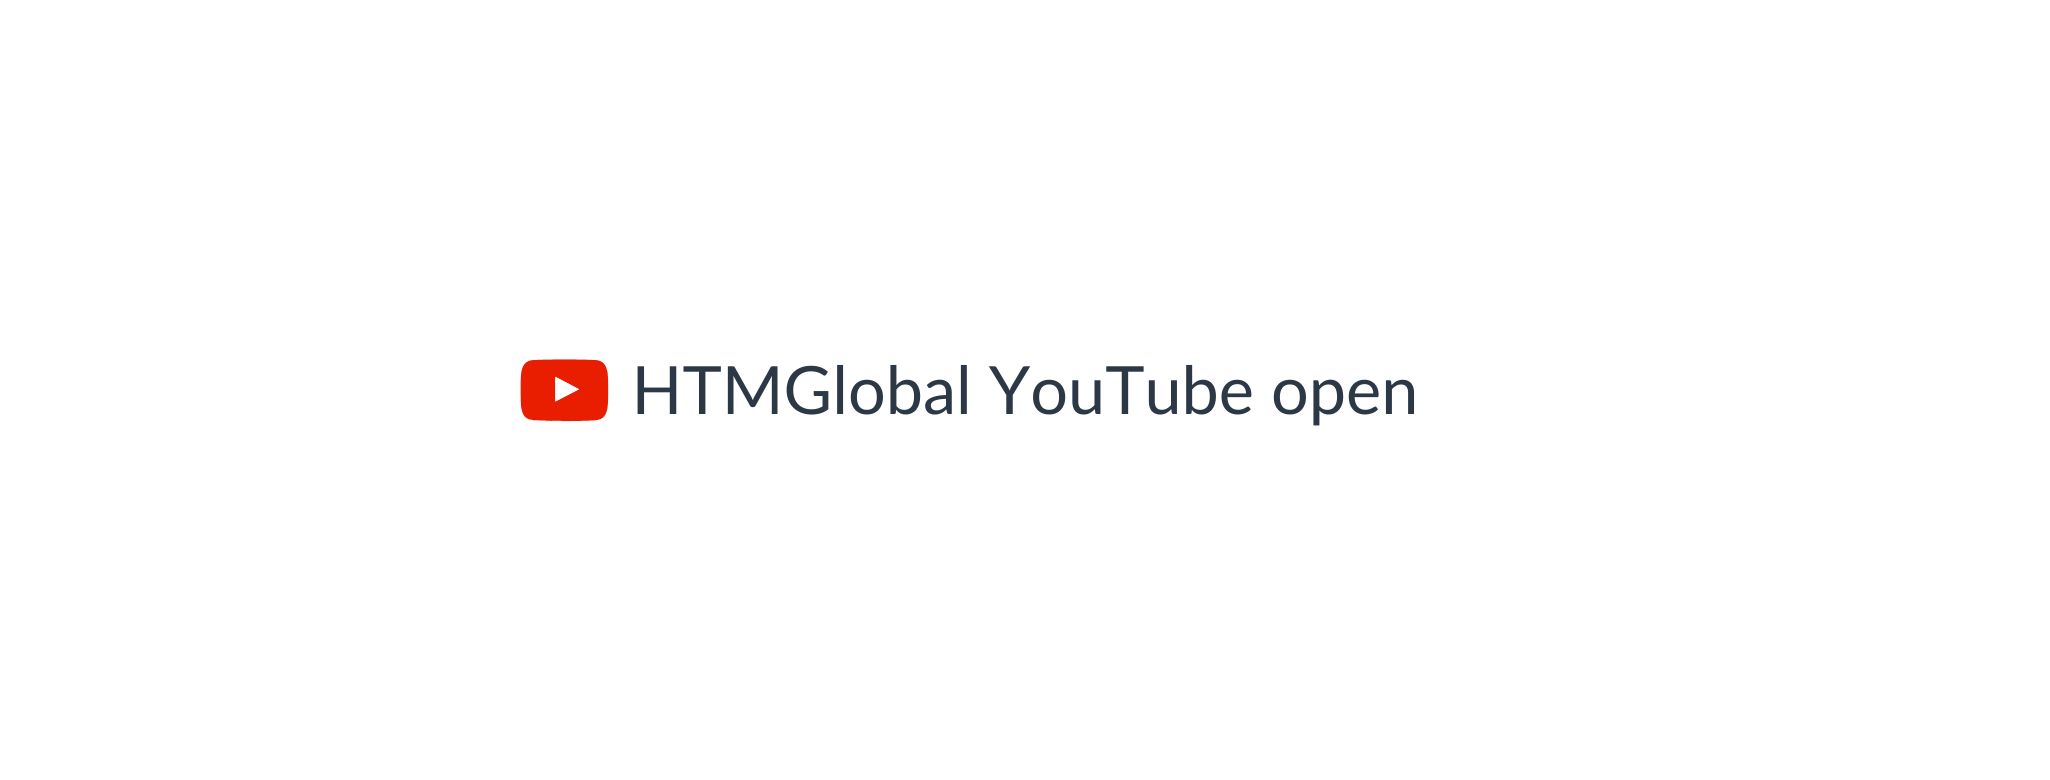 HTMGlobal YouTube open